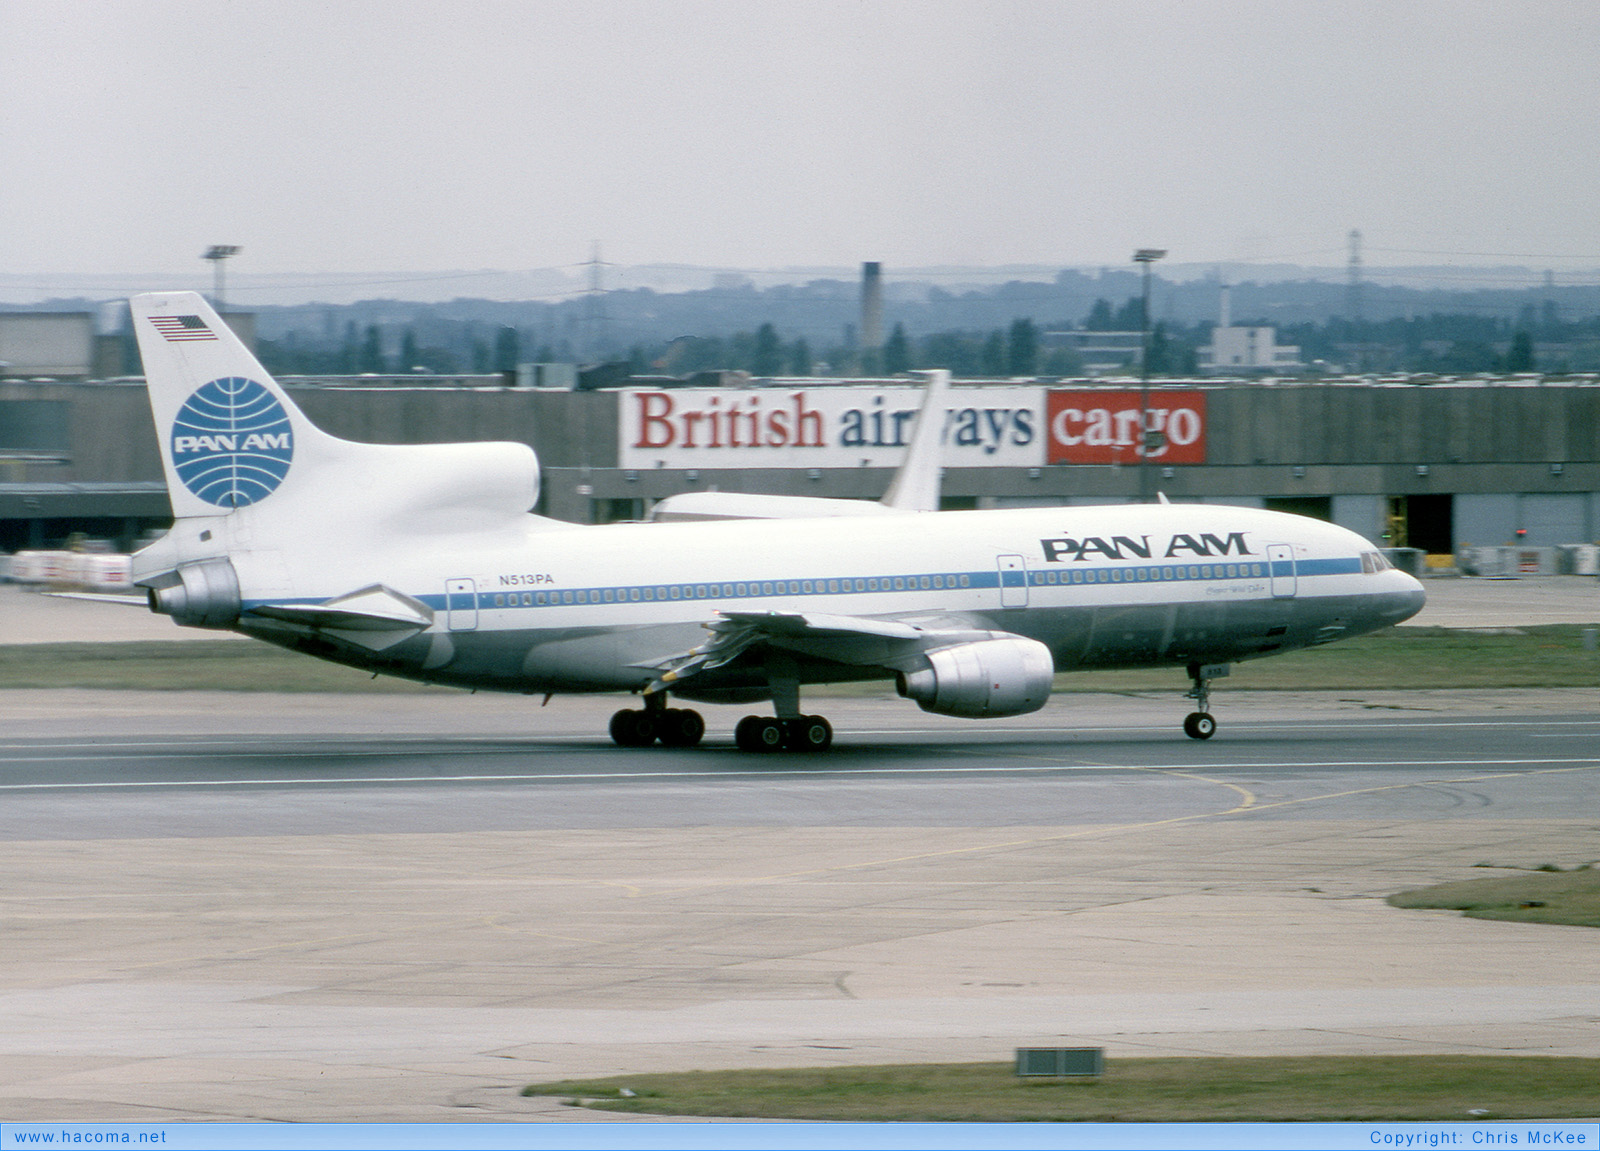 Photo of N513PA - Pan Am Clipper Wild Duck - London Heathrow Airport - Sep 22, 1982